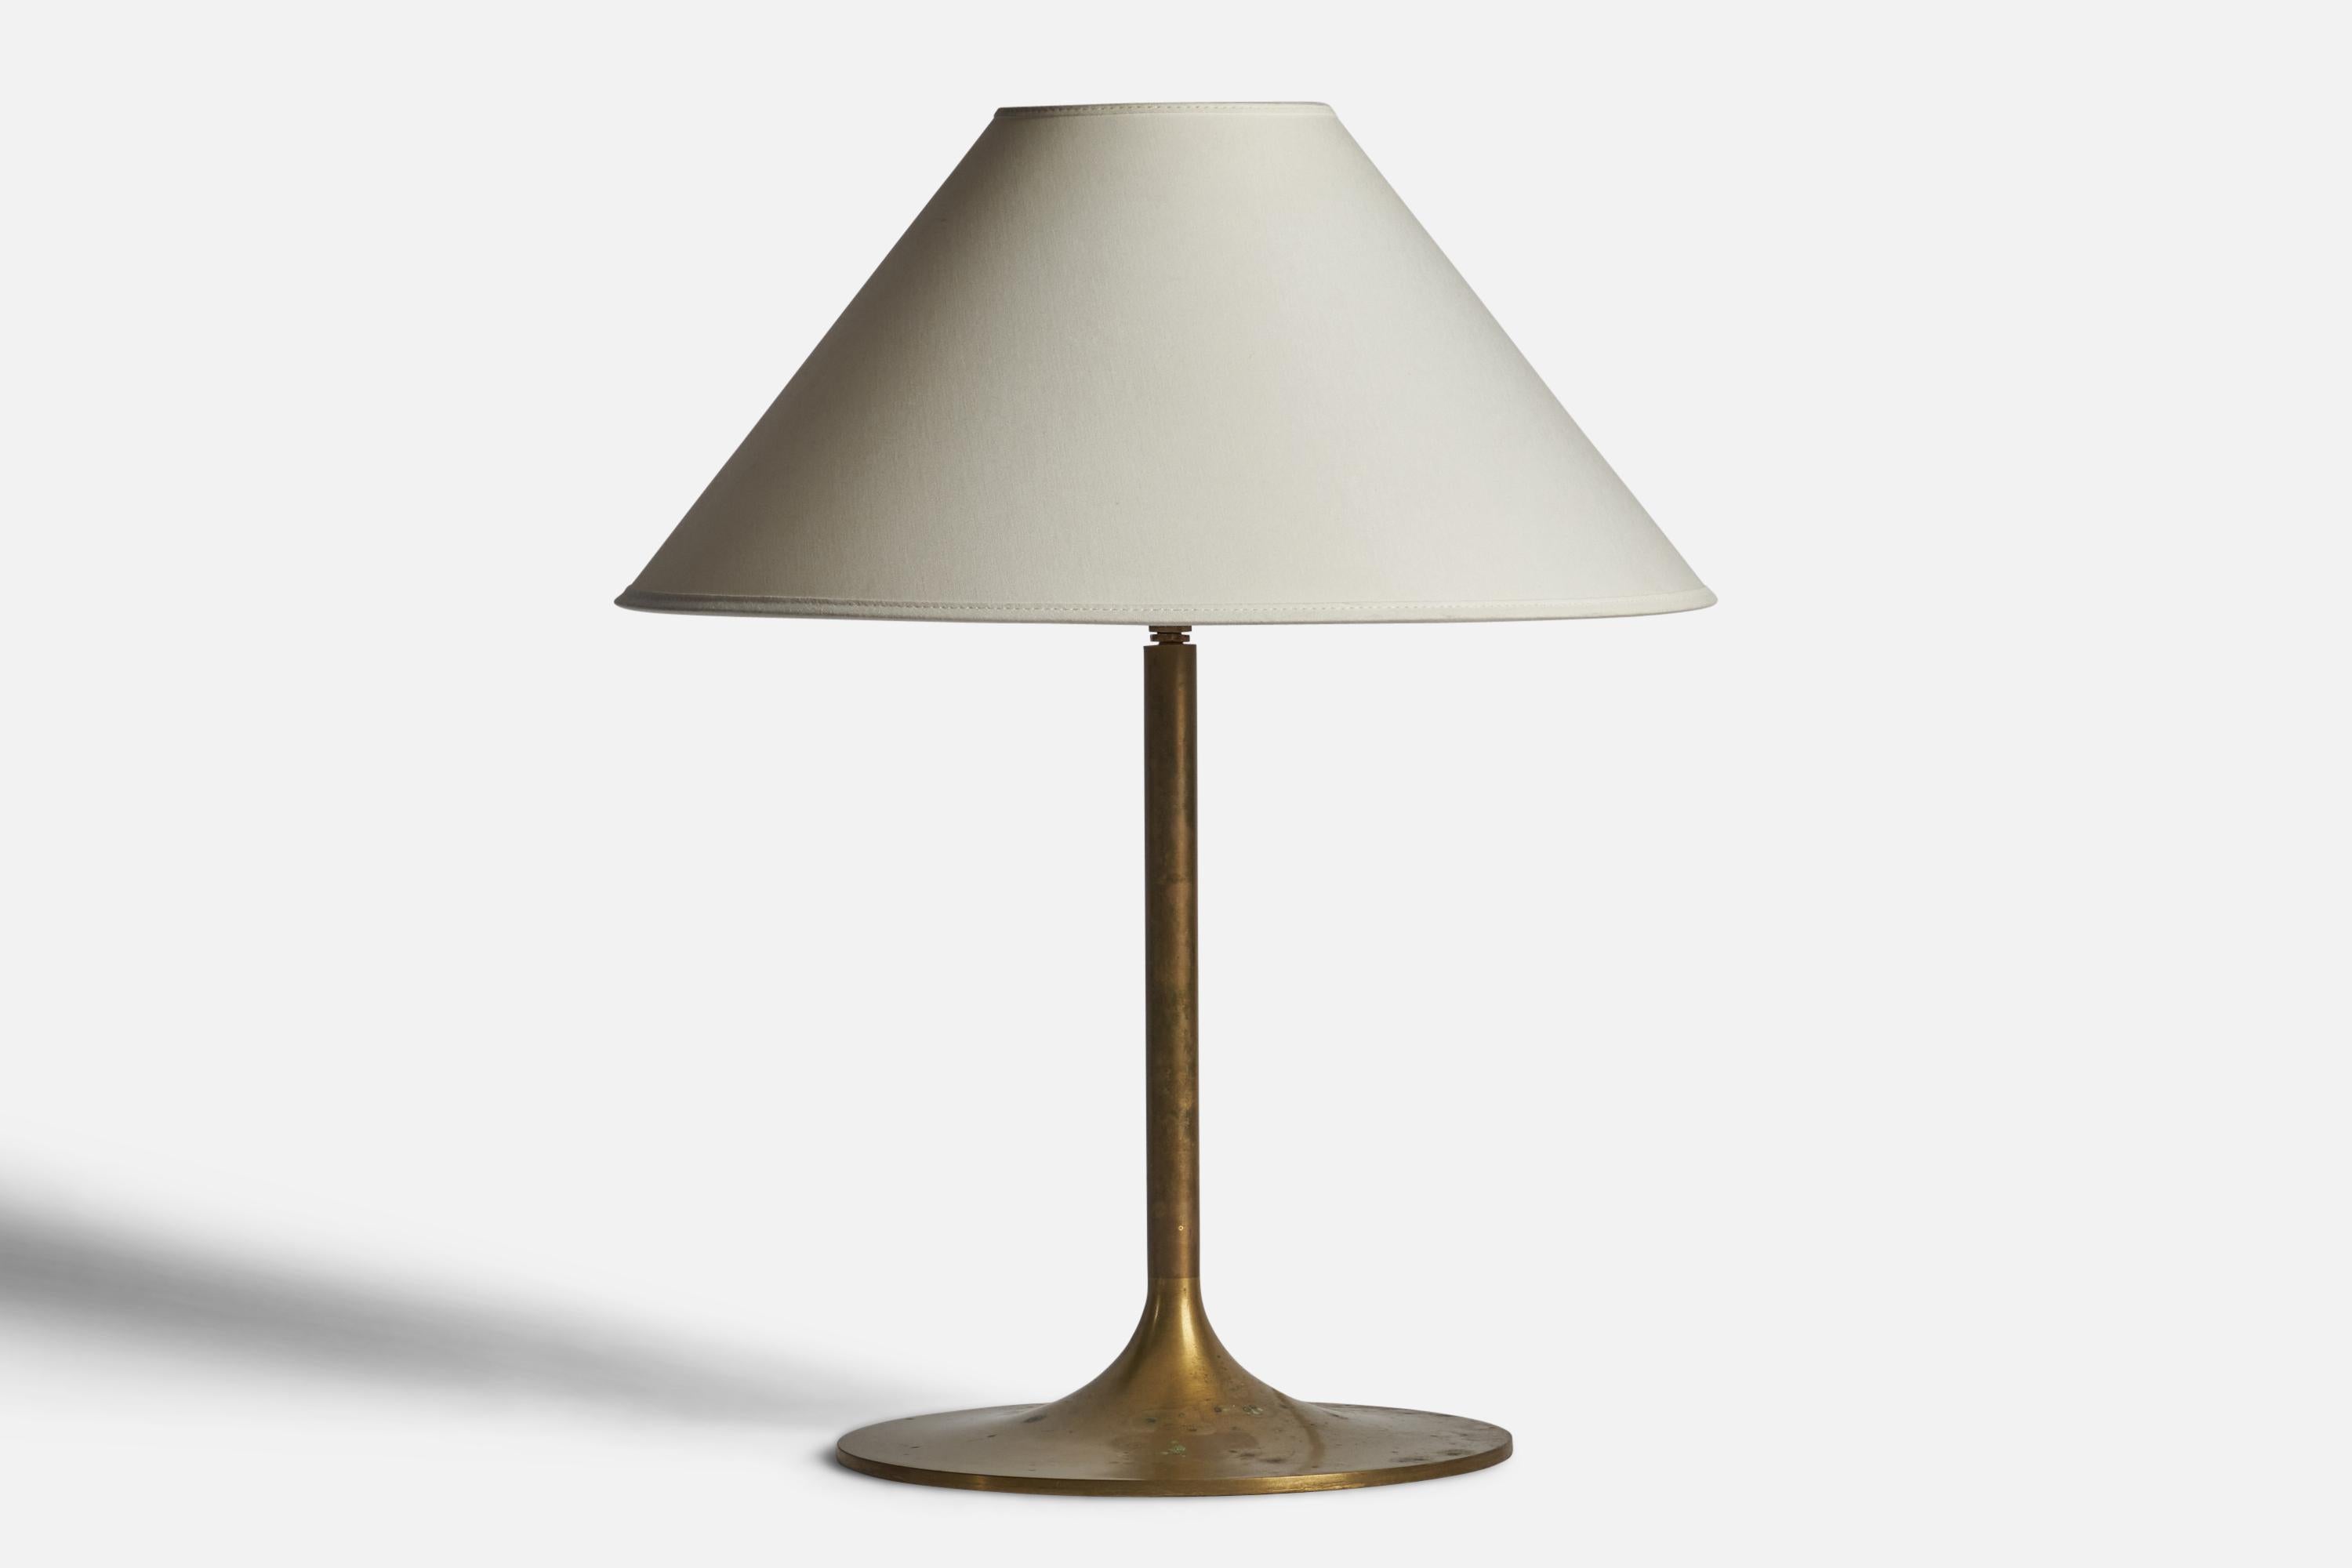 Lampe de table en laiton conçue et produite en Suède, années 1950.

Dimensions de la lampe (pouces) : 15